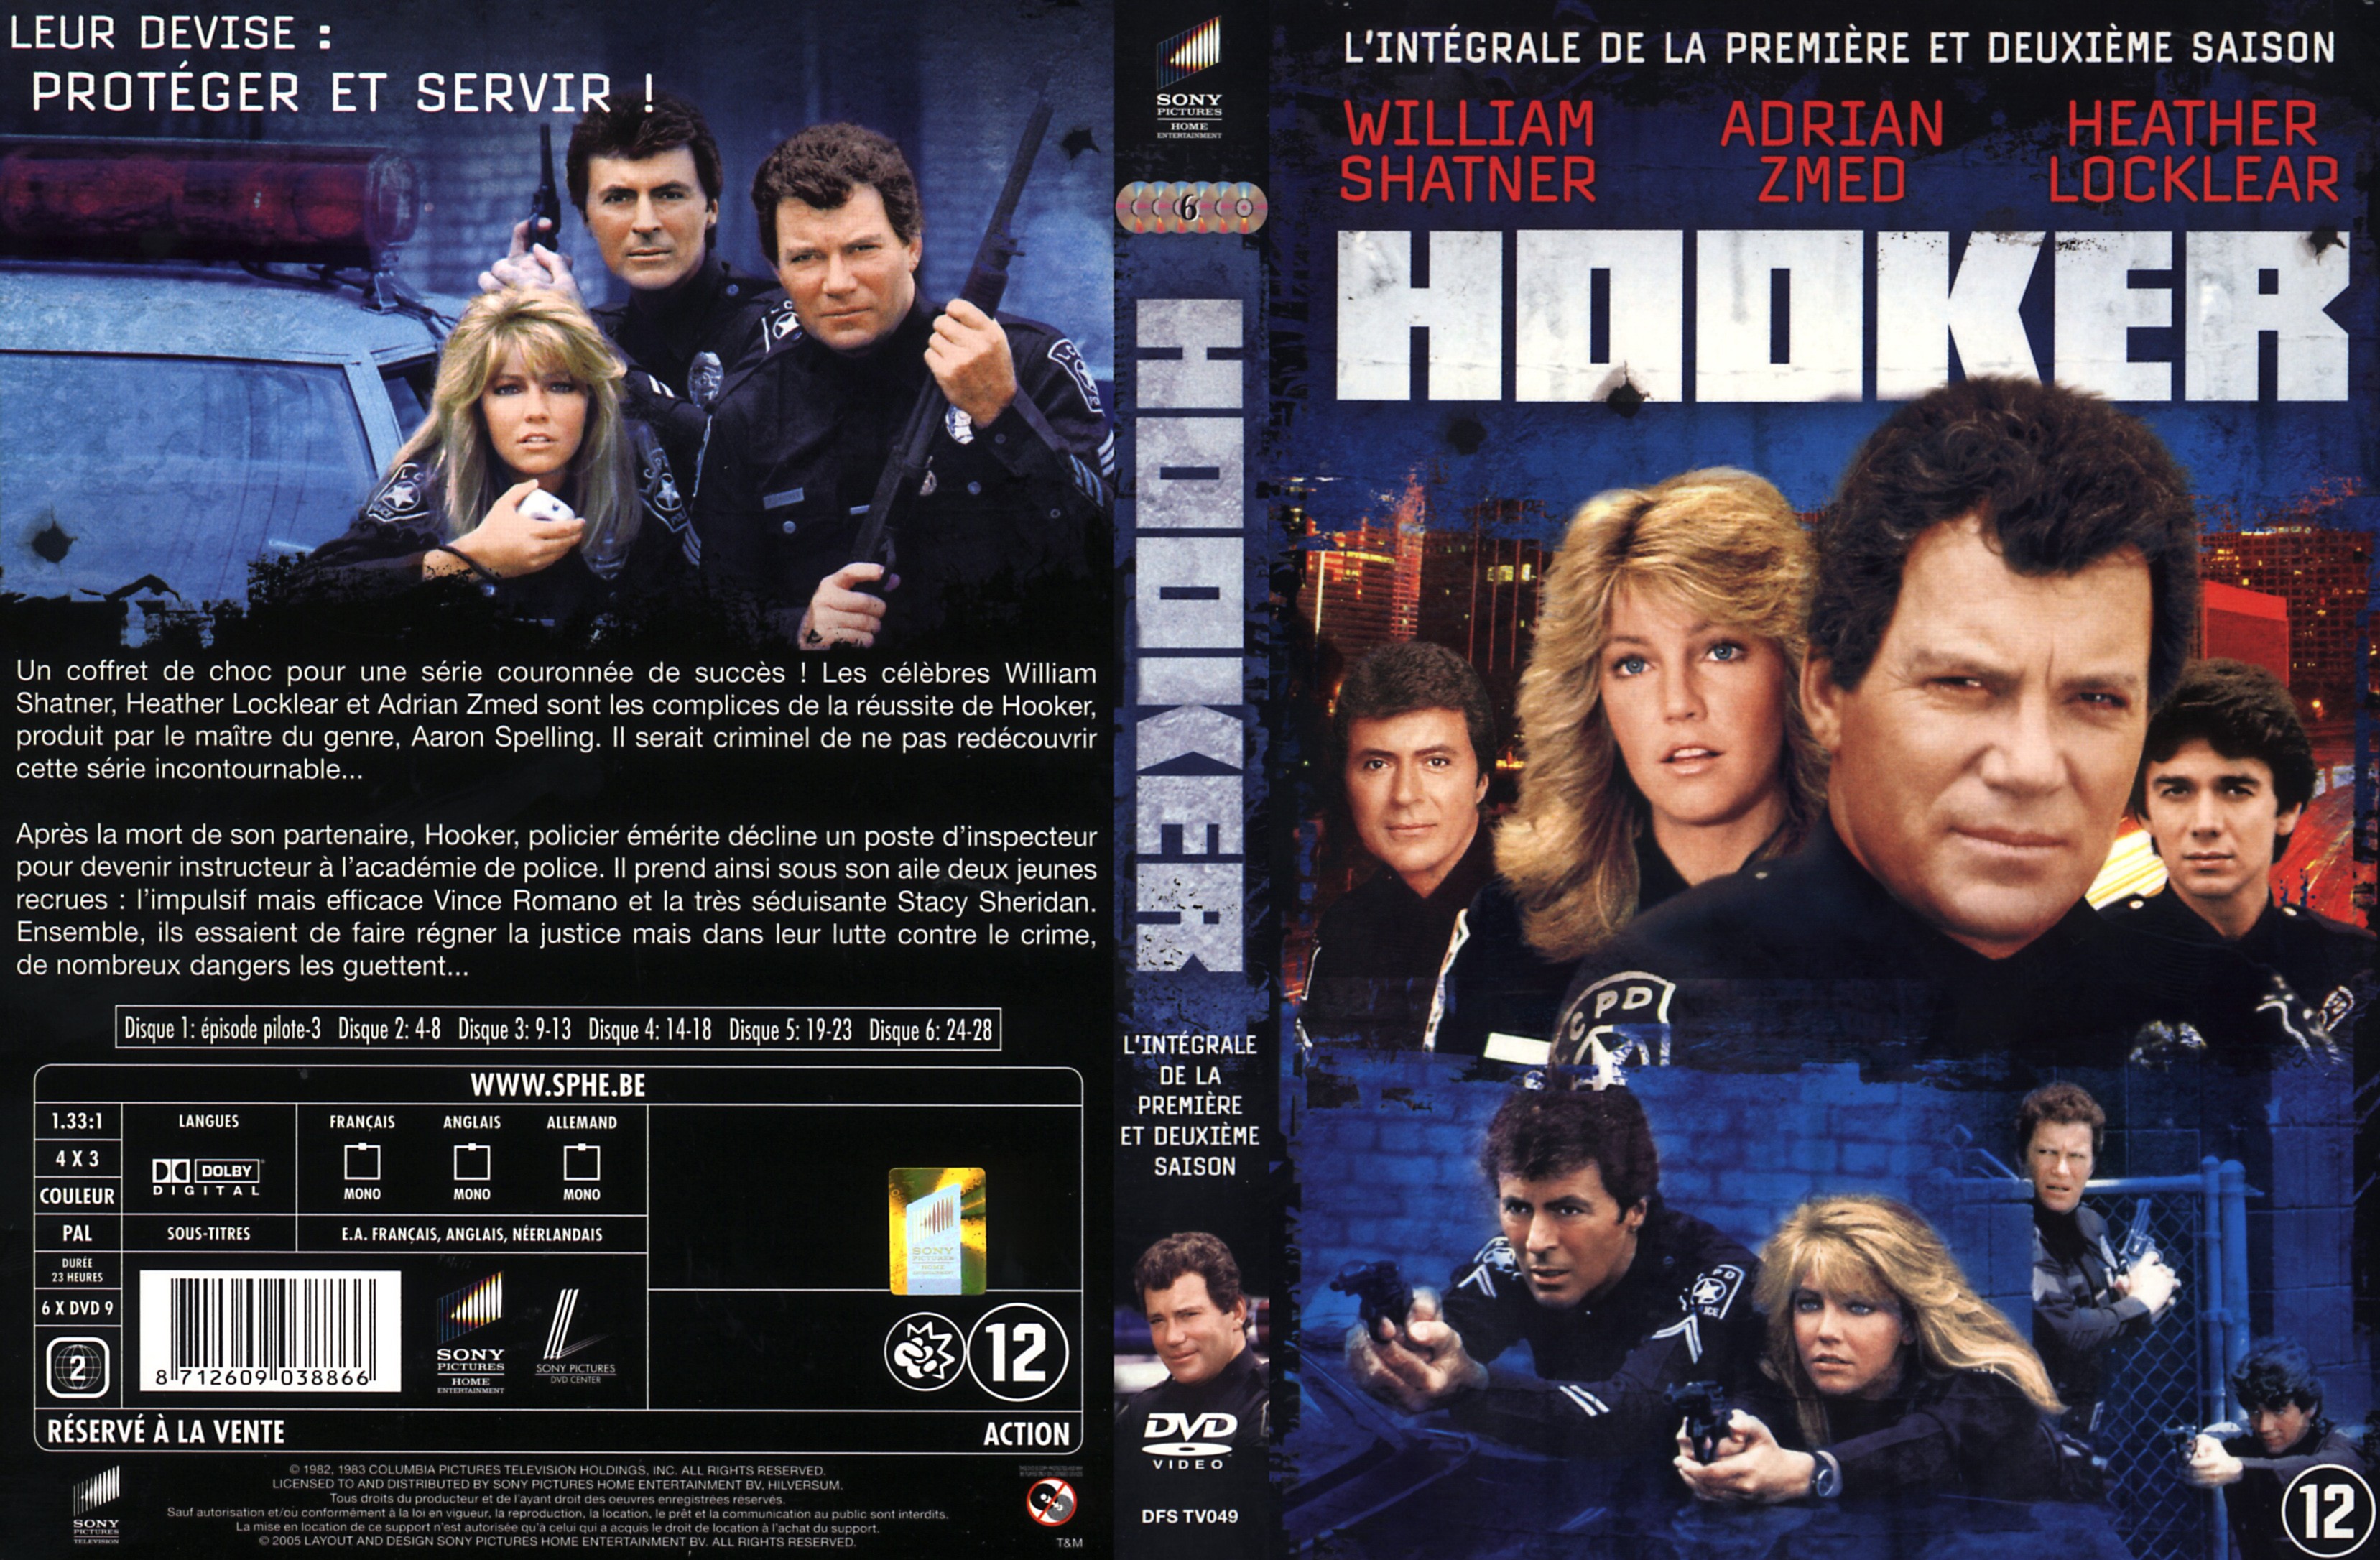 Jaquette DVD Hooker Saison 1 et 2